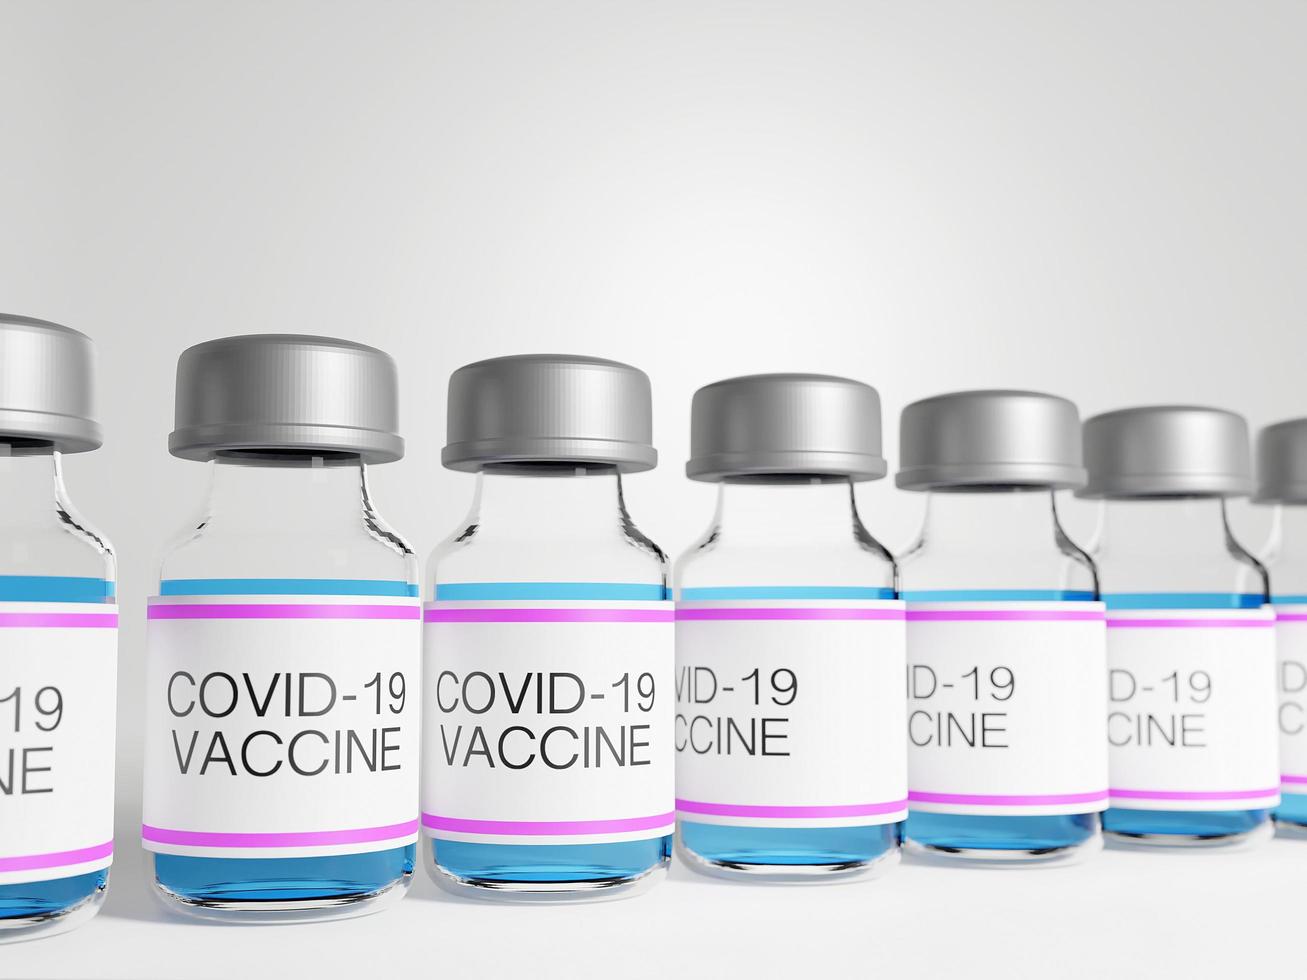 rendu 3d des bouteilles de vaccins covid-19 photo